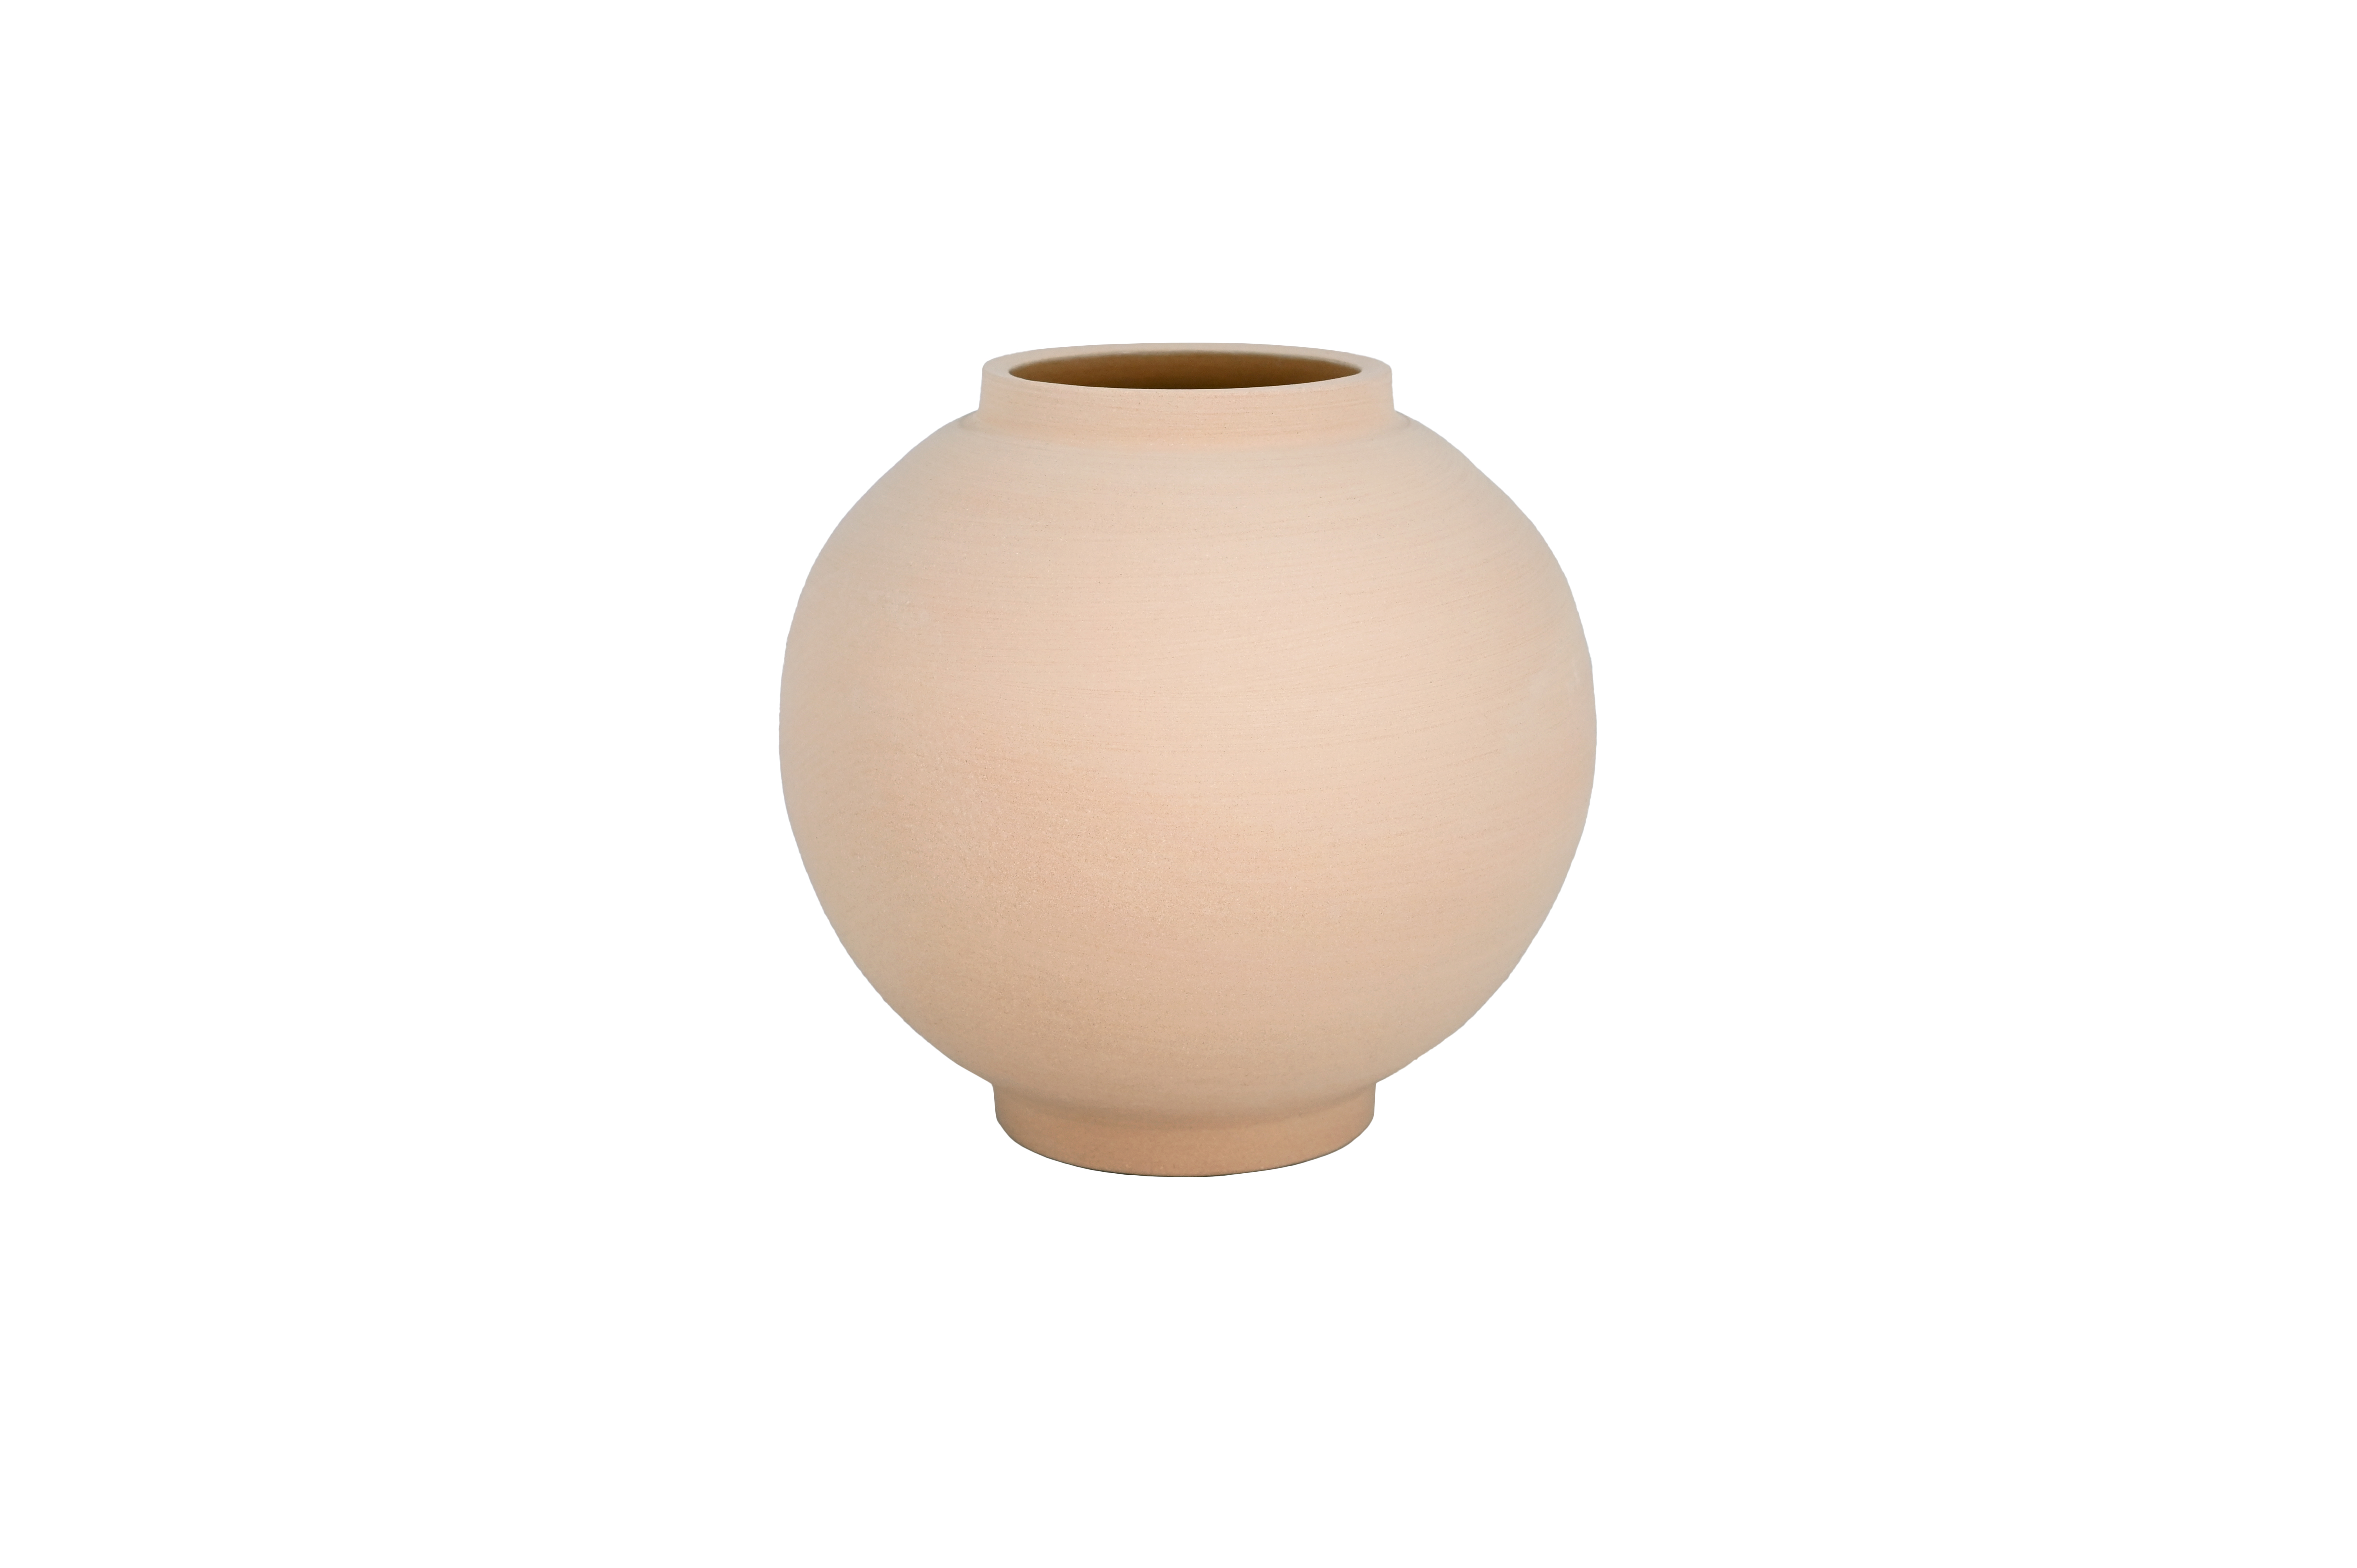 Caly ball vase